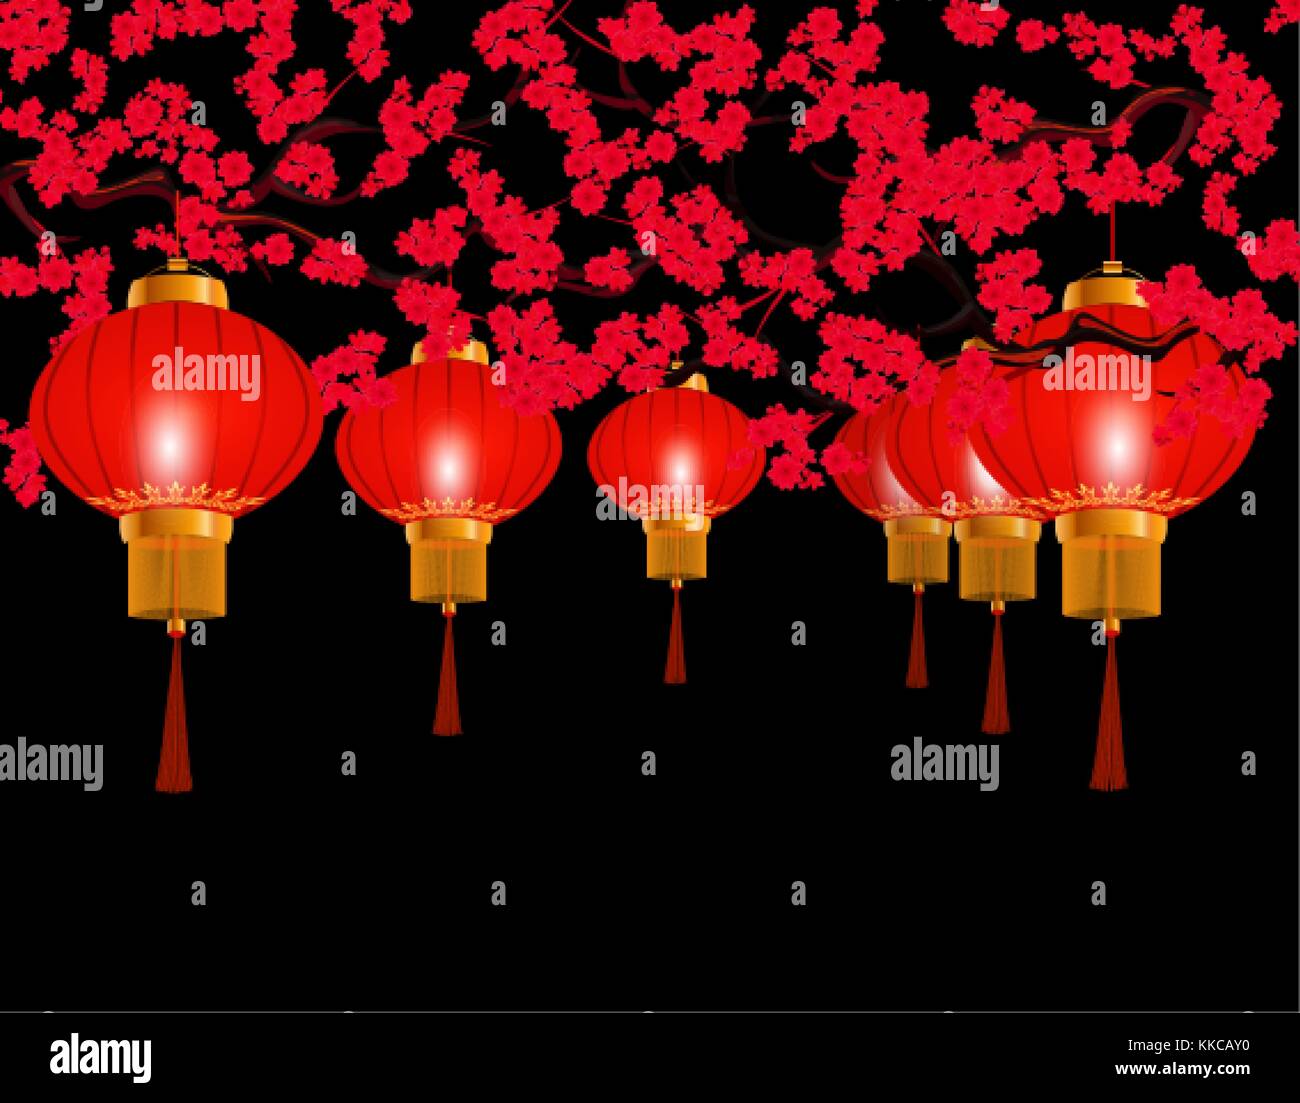 Chinesisches neues Jahr. Im Park rote Lampions aufgehängt. runde Form. Vor dem Hintergrund einer blühenden rote Kirsche. Abbildung Stock Vektor